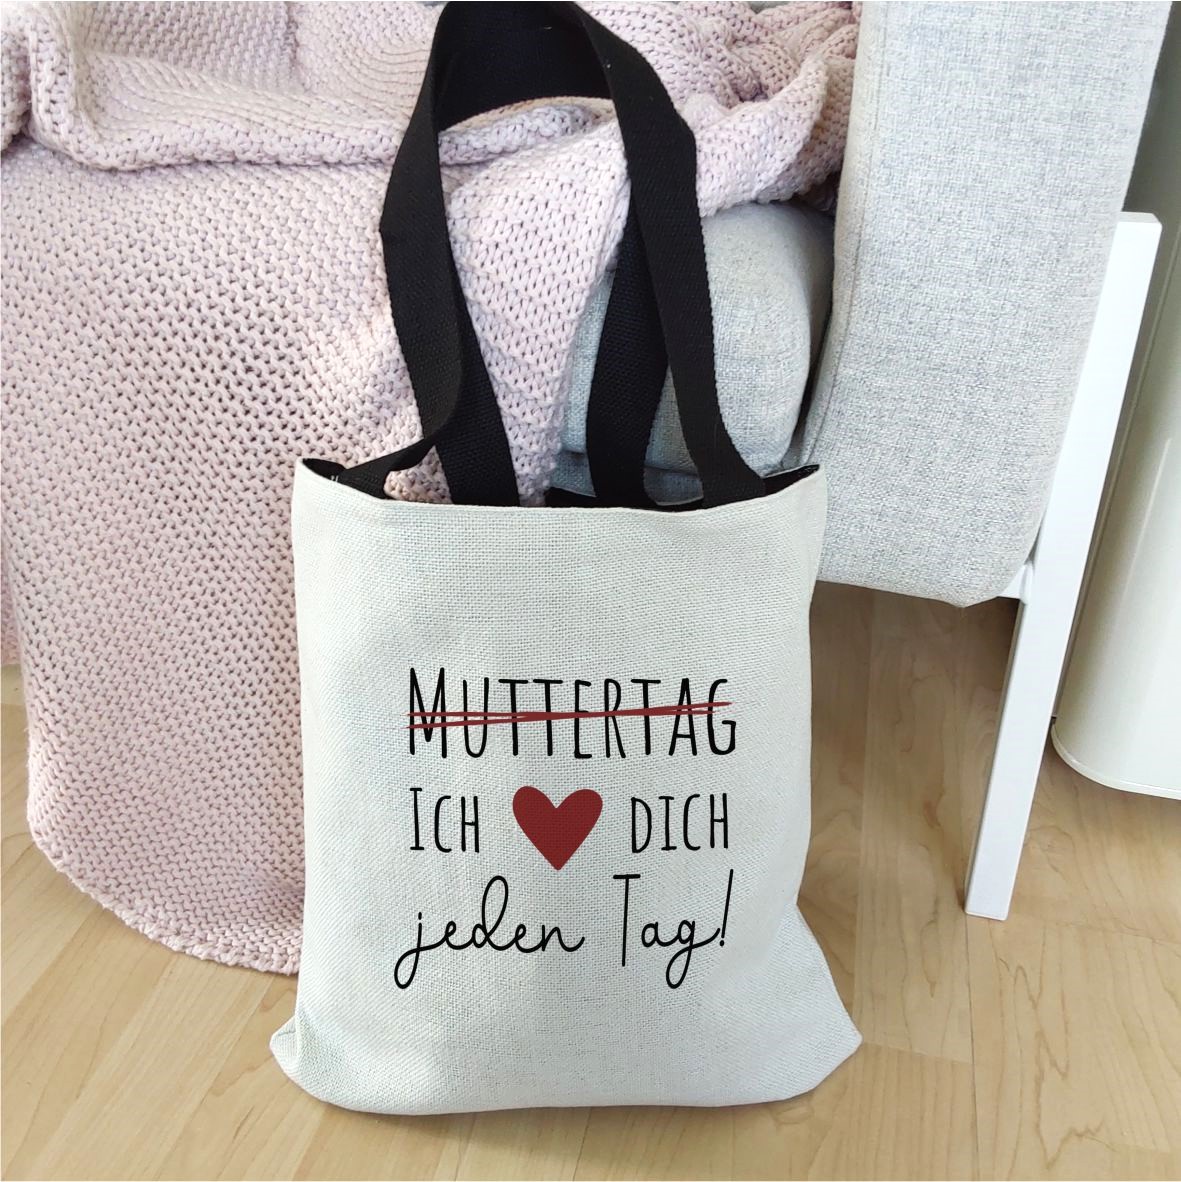 Einkaufstasche "Muttertag - Ich liebe dich jeden Tag!"